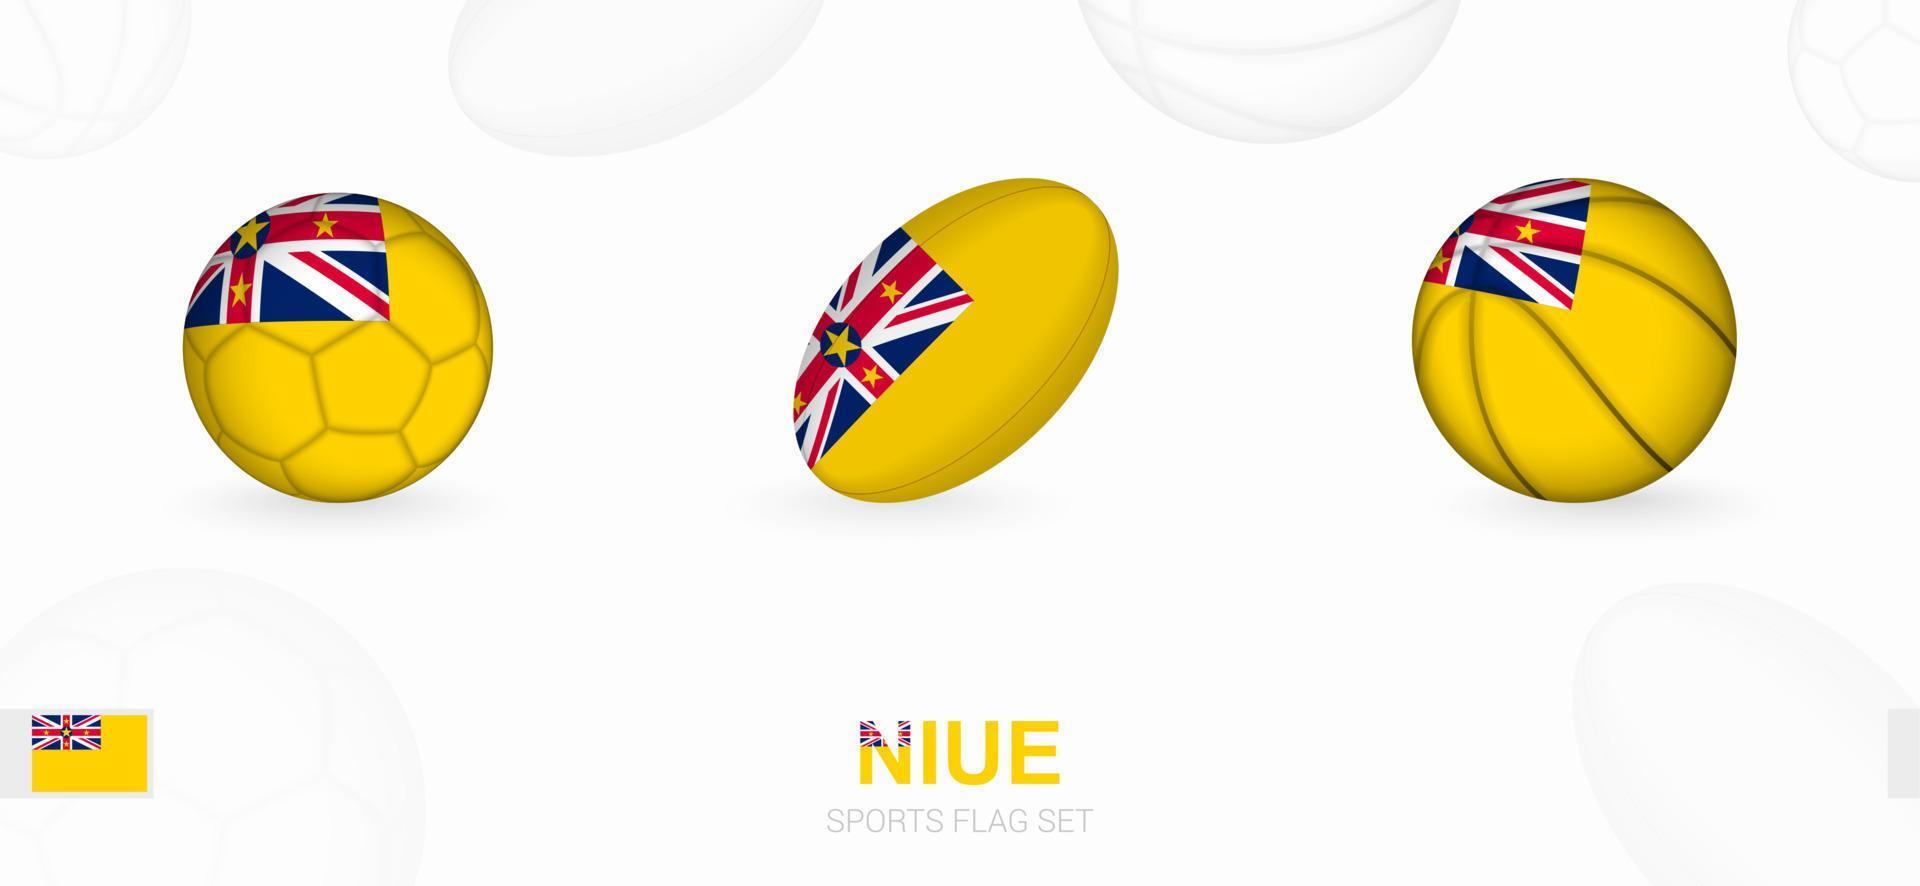 Esportes ícones para futebol, rúgbi e basquetebol com a bandeira do niue. vetor